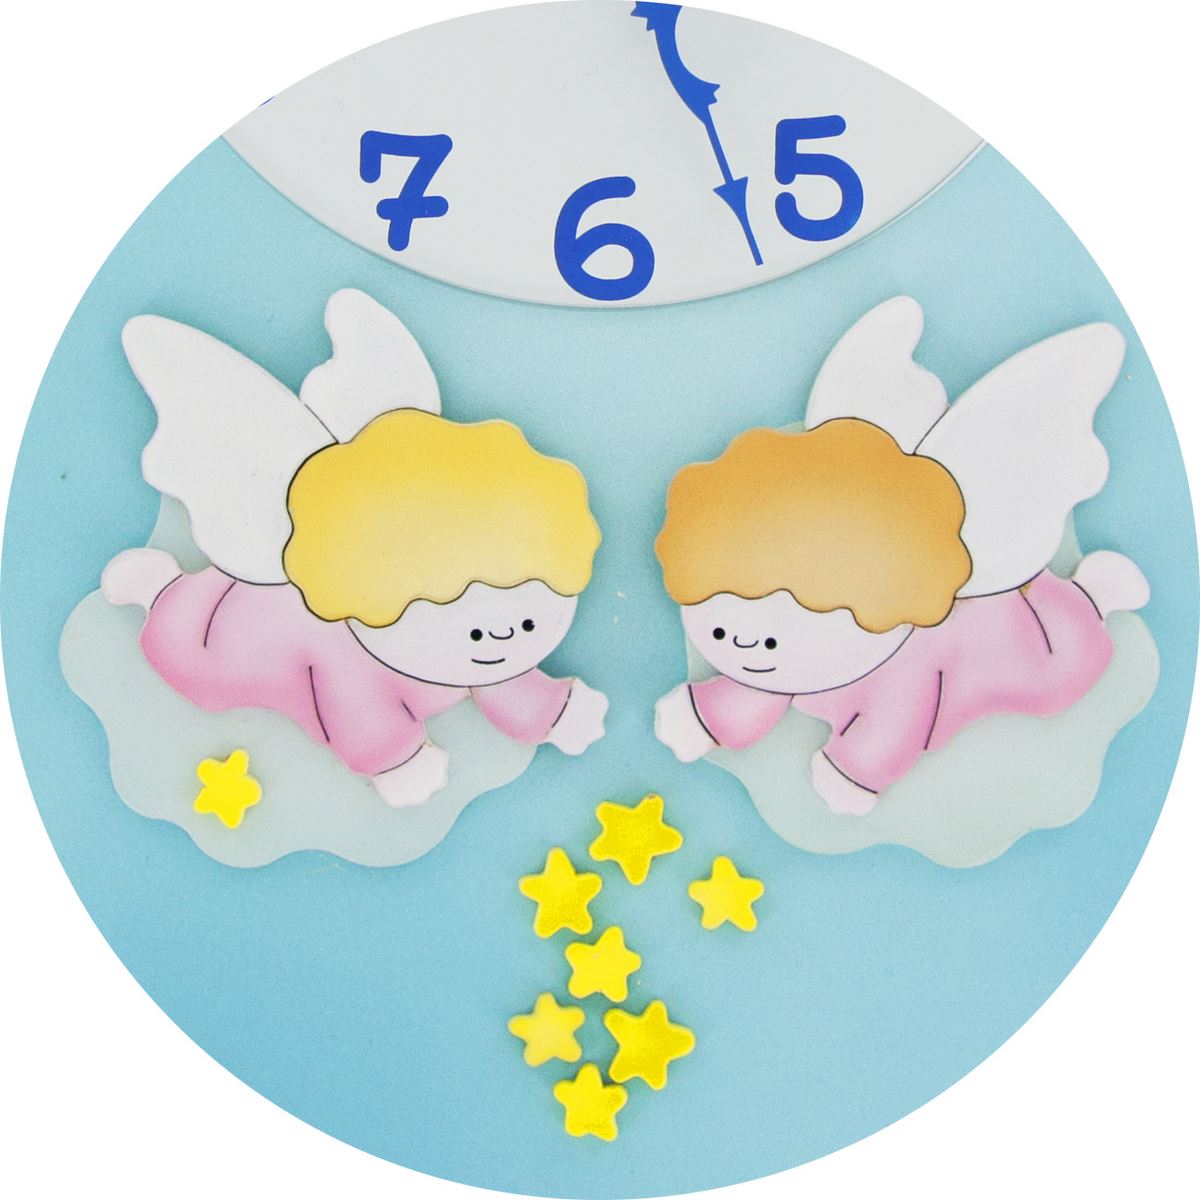 ferrari & arrighetti pala bassorilievo orologio con angeli da appendere al muro / parete, quadretto per bimbi a forma di pala in legno, idea regalo per bambini, 30 x 20 cm